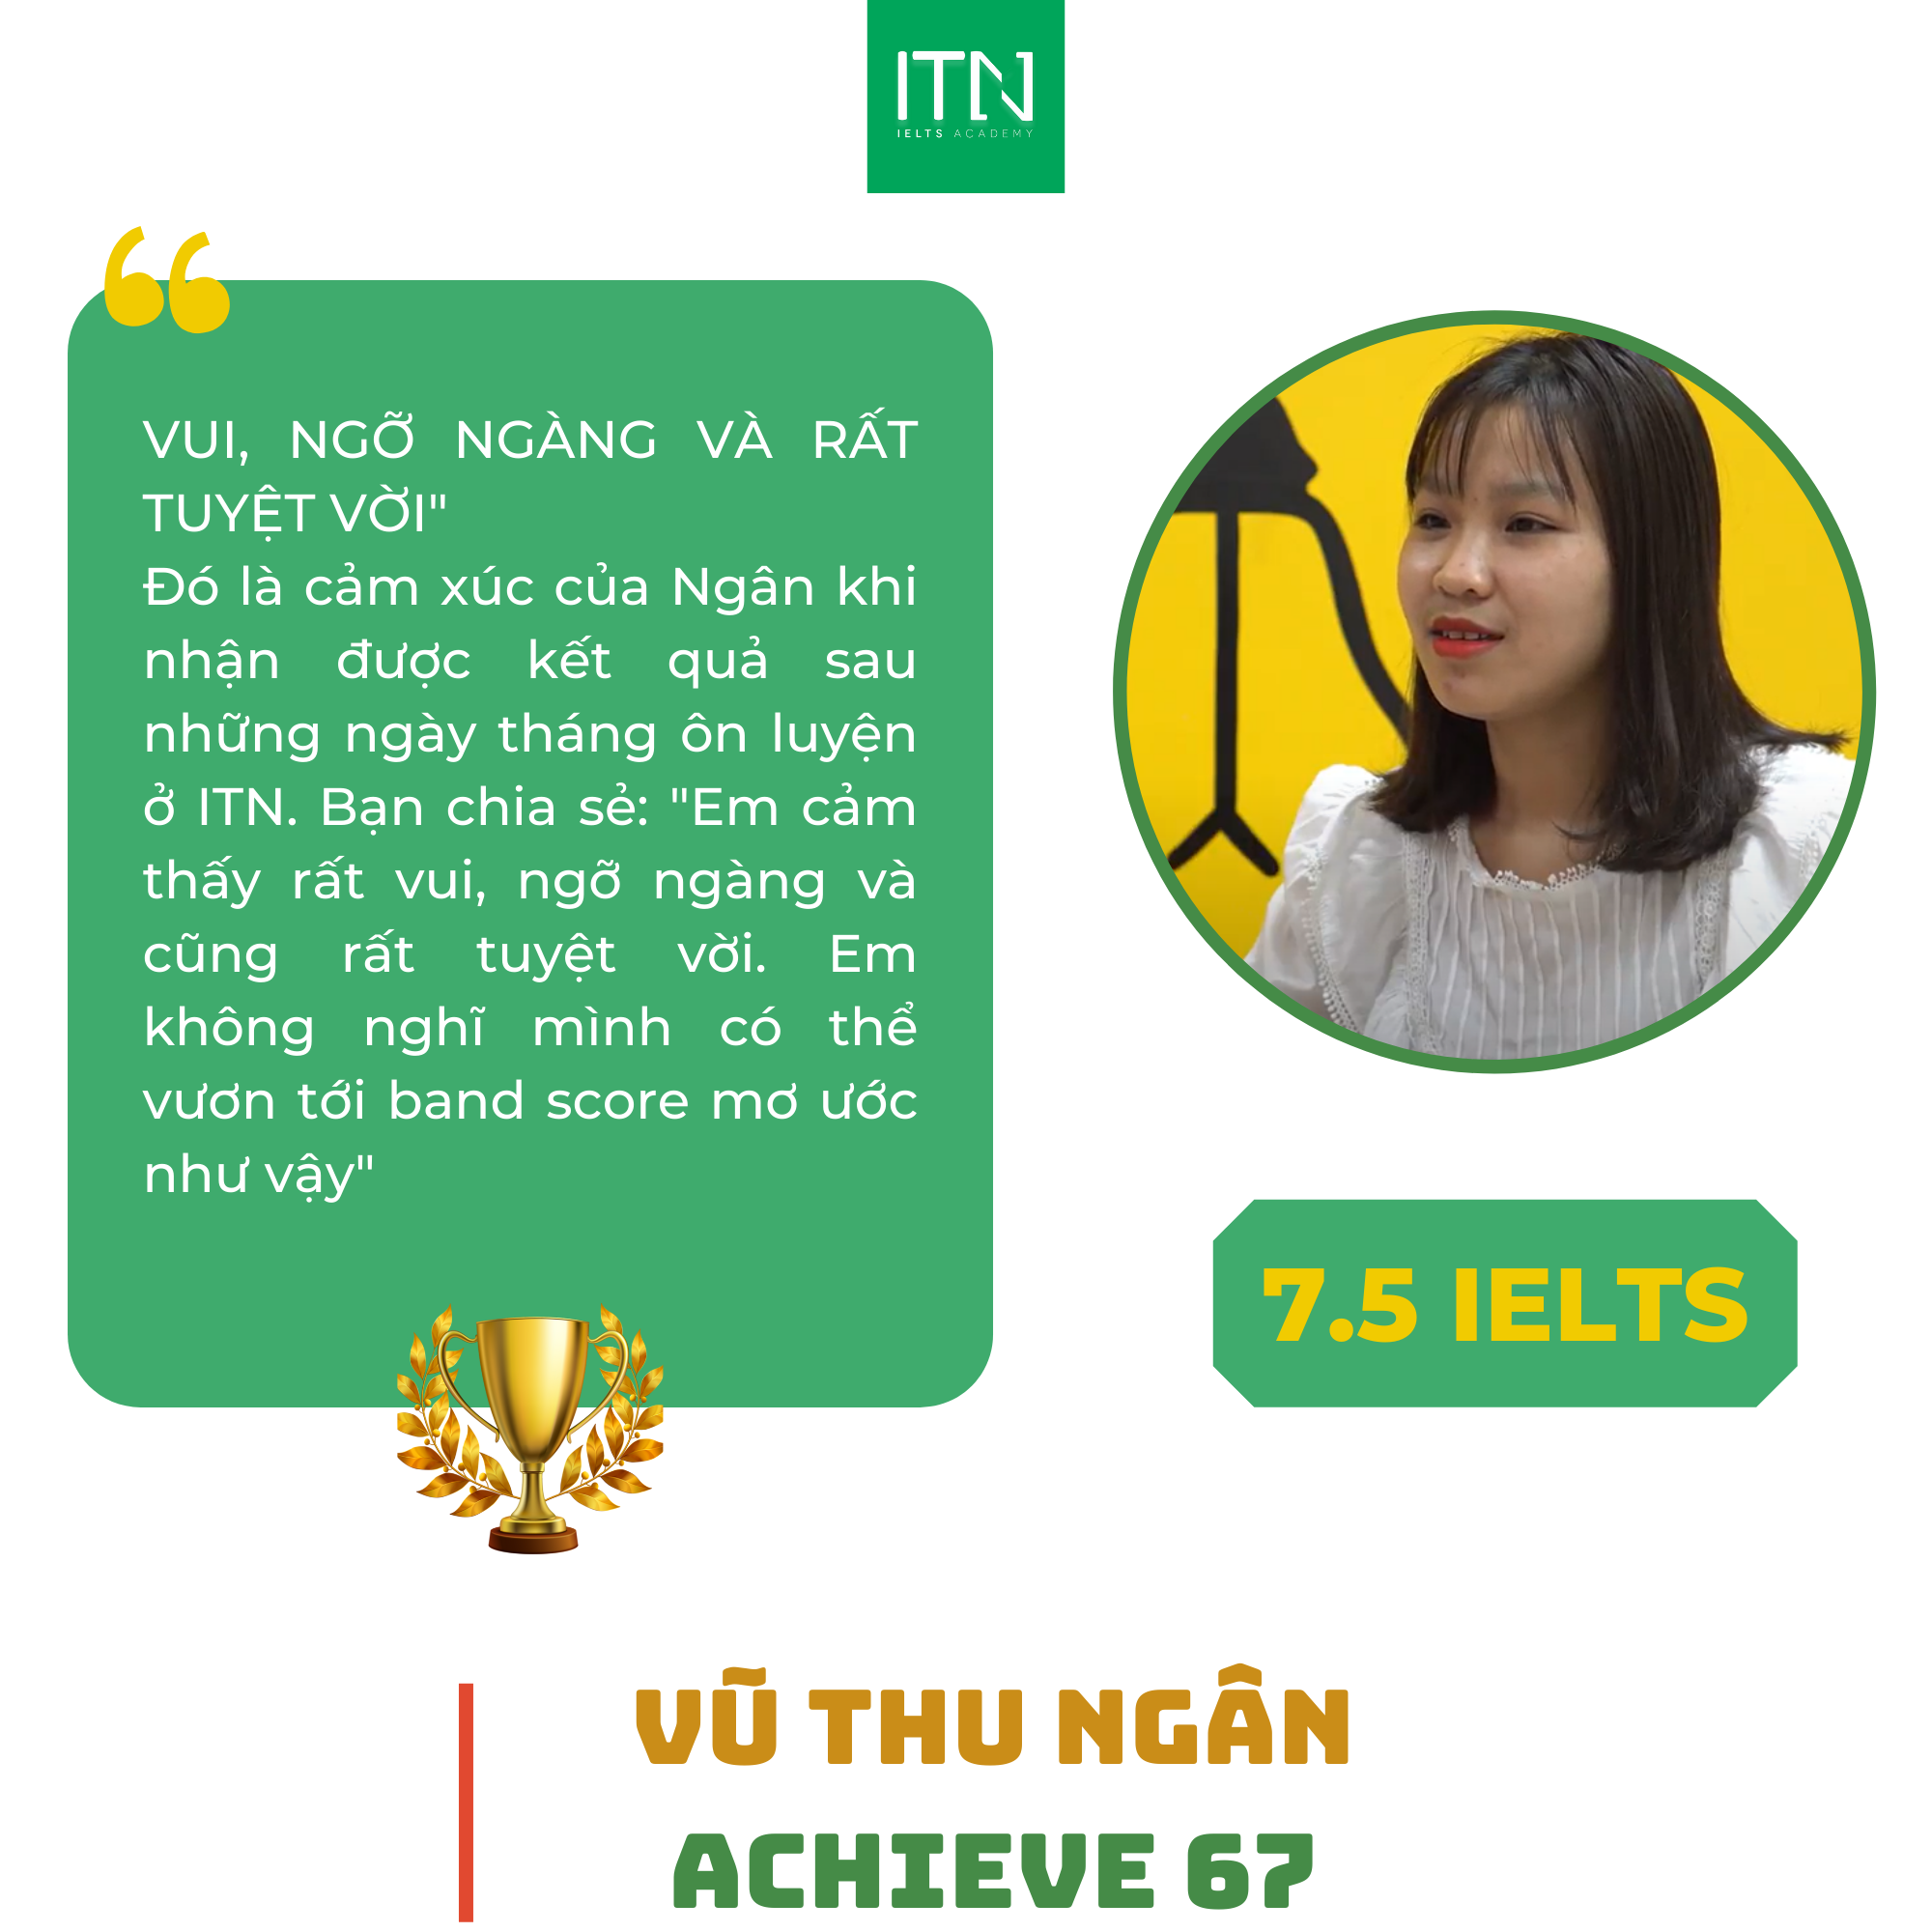 Vũ Thu Ngân - 7.5 IELTS Overall